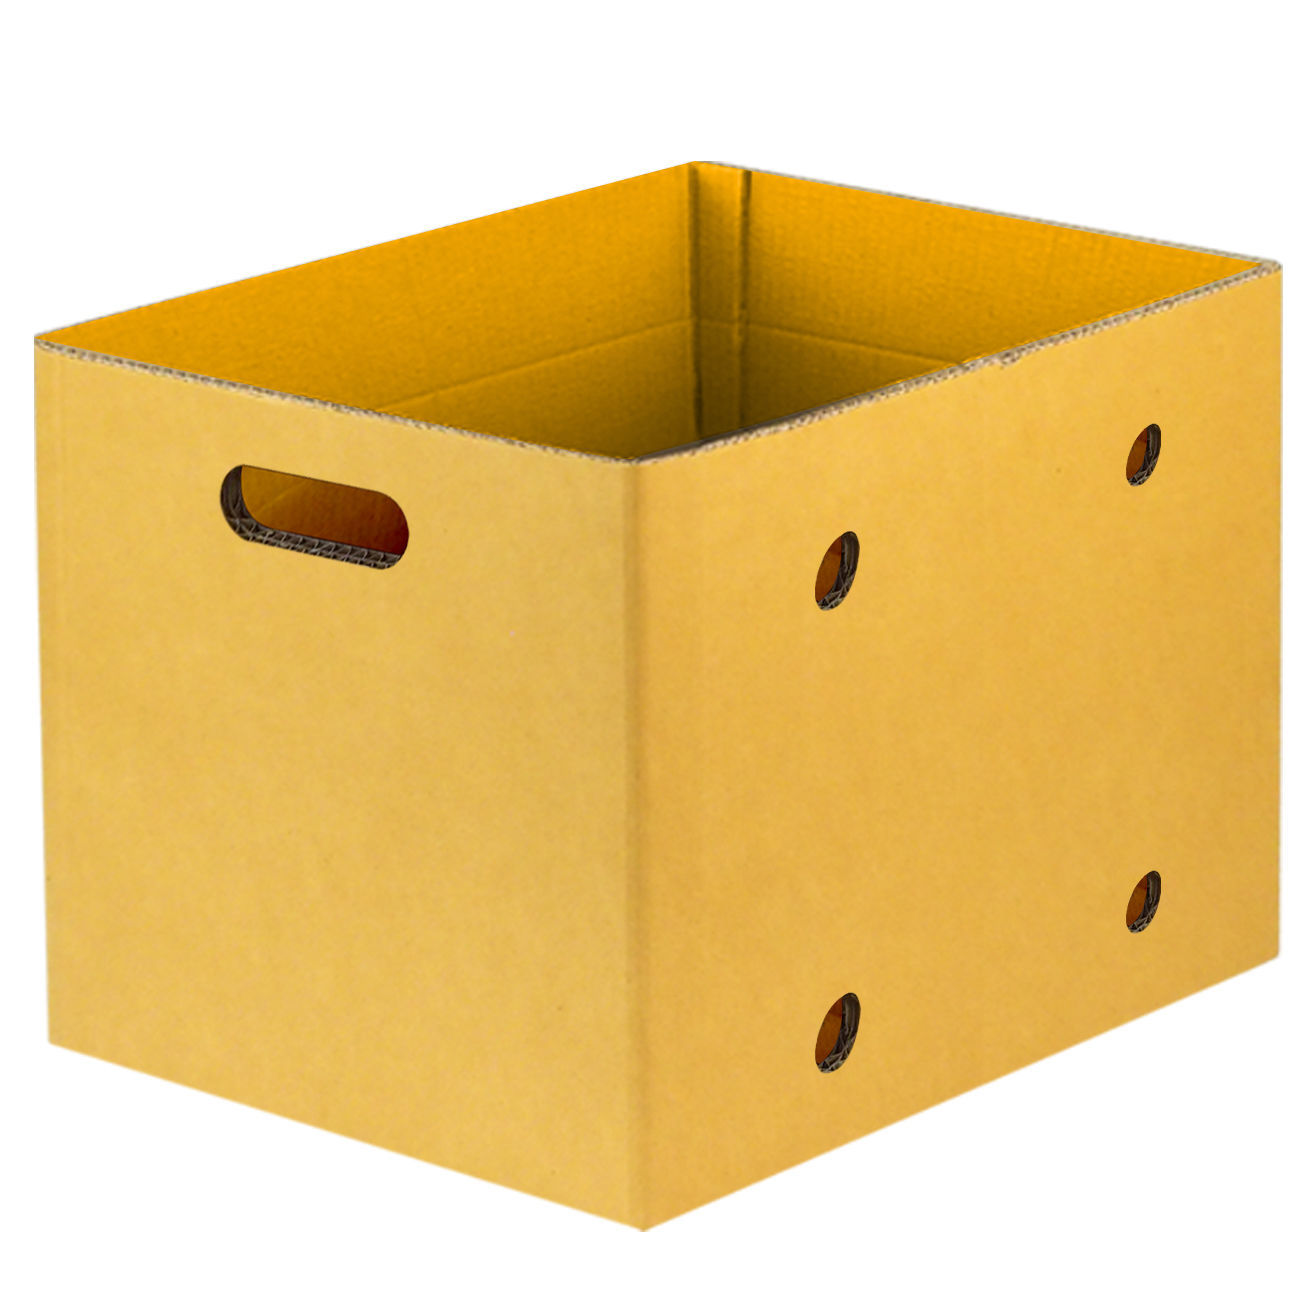 กล่องทุเรียนส่งออก20กก. บรรจุ4ลูก/กล่อง ประกอบด้วย
1.กล่อง
2.แผ่นรองก้น
3.แผ่นล้อม
4.แผ่นกั้น